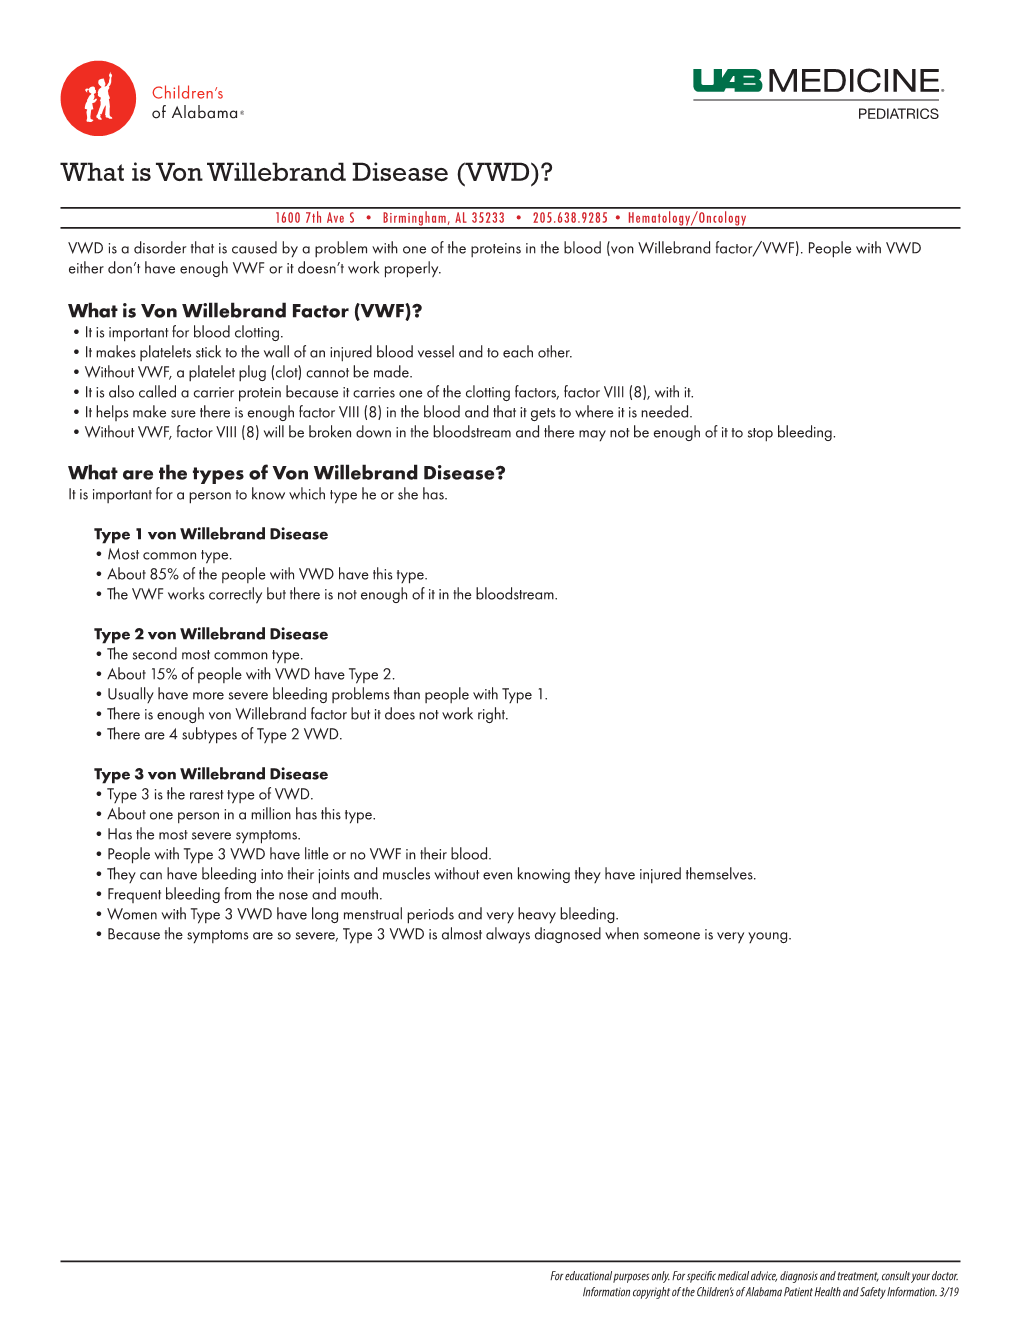 What Is Von Willebrand Disease (VWD)?